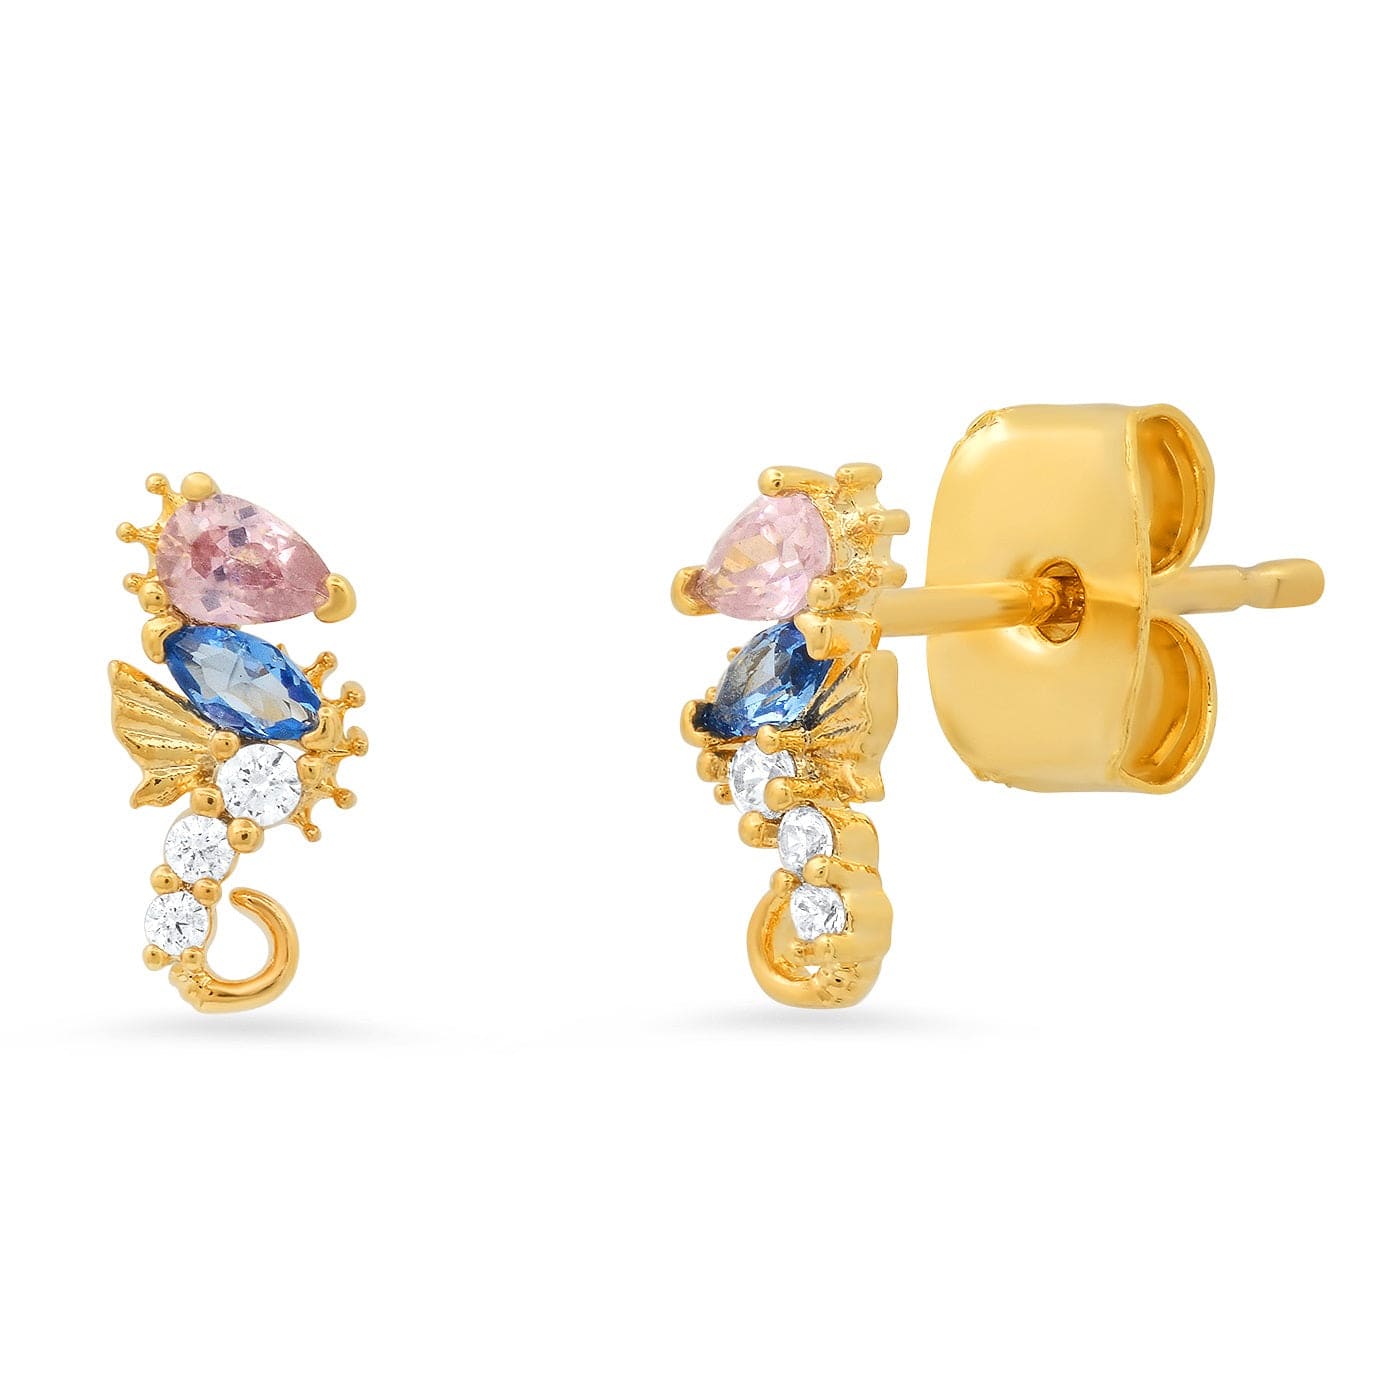 TAI JEWELRY Earrings Whimsical Sea Horse Studs